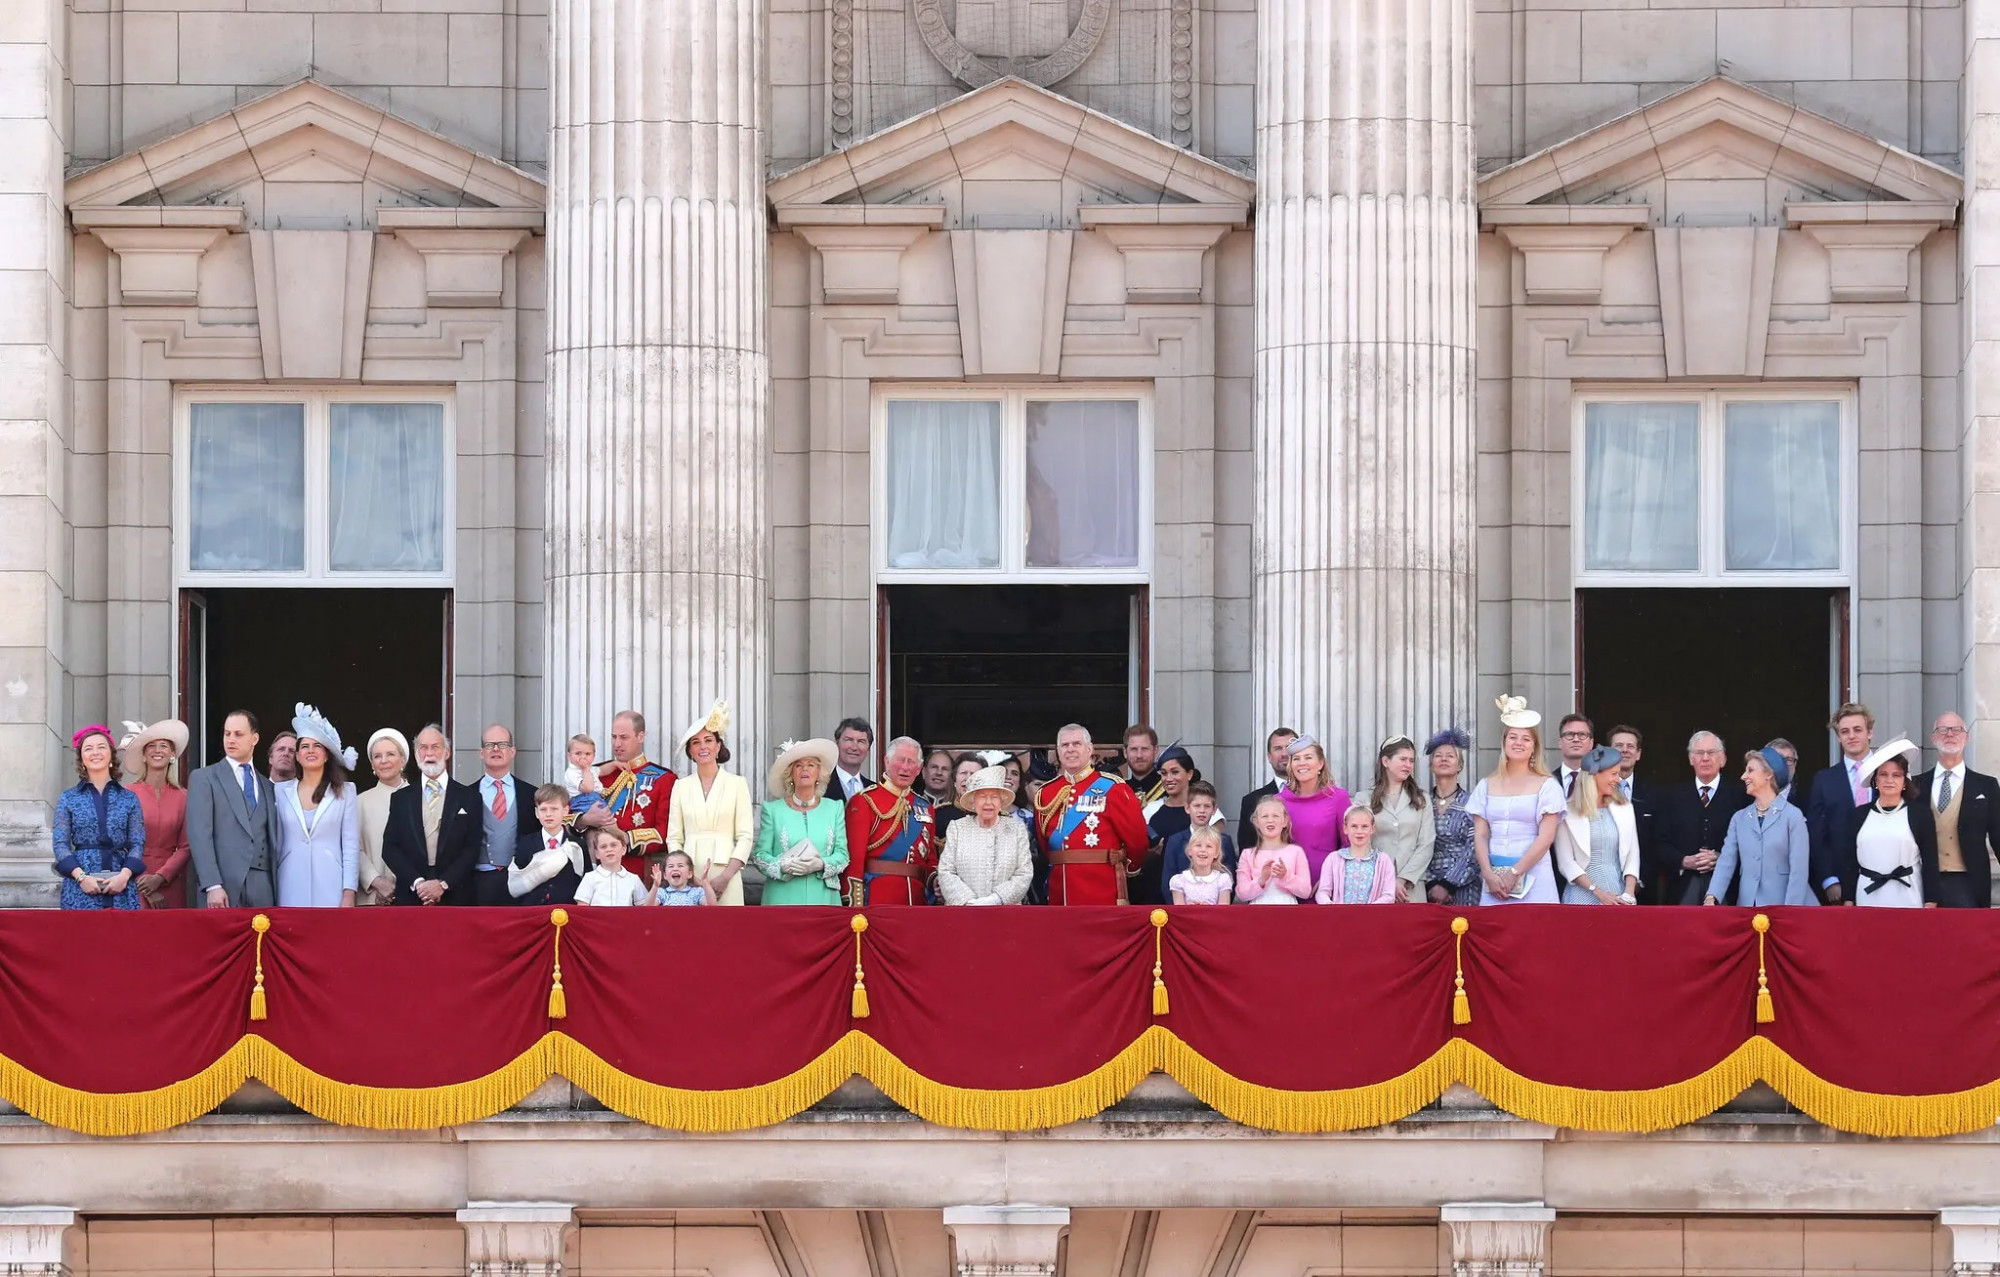 Lần cuối cùng cả gia đình tụ tập để vẫy chào đám đông bên ngoài Cung điện Buckingham là vào năm 2019, trước đại dịch COVID-19, khi nhóm 17 người bao gồm Hoàng tử Harry, Công nương Meghan Markle và Hoàng tử Andrew.